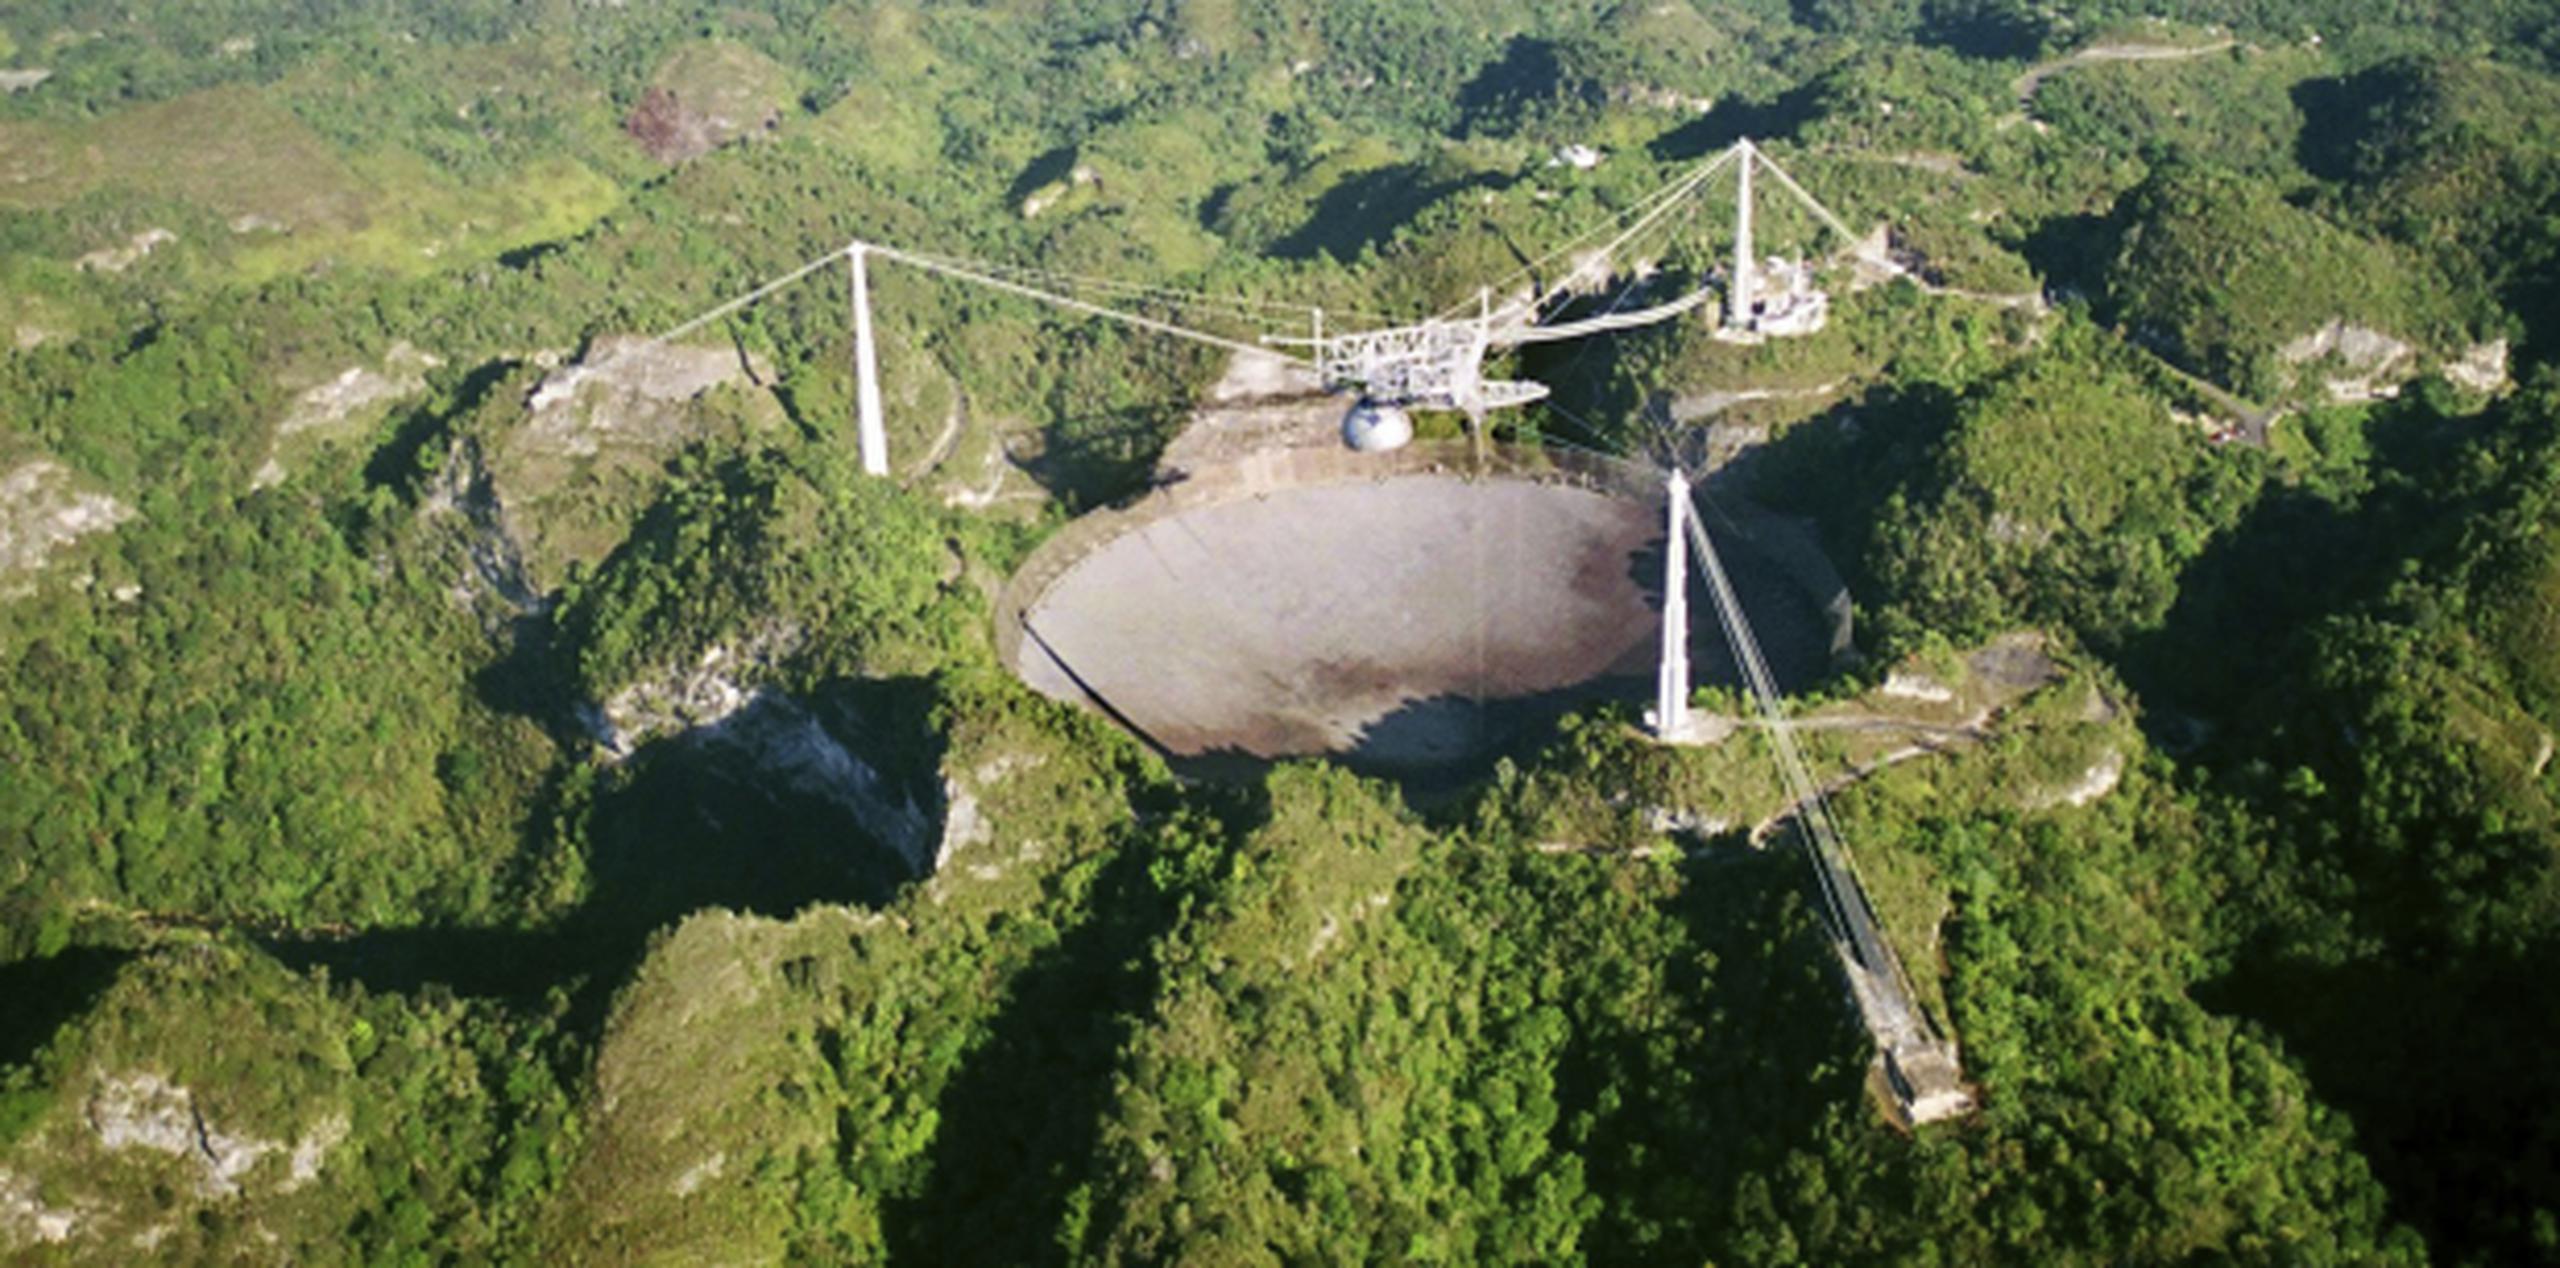 El observatorio ha sido amenazado en años recientes por telescopios más poderosos en Chile y China, donde las autoridades inauguraron en el 2016 un radiotelescopio de 500 metros de diámetro. (AP)